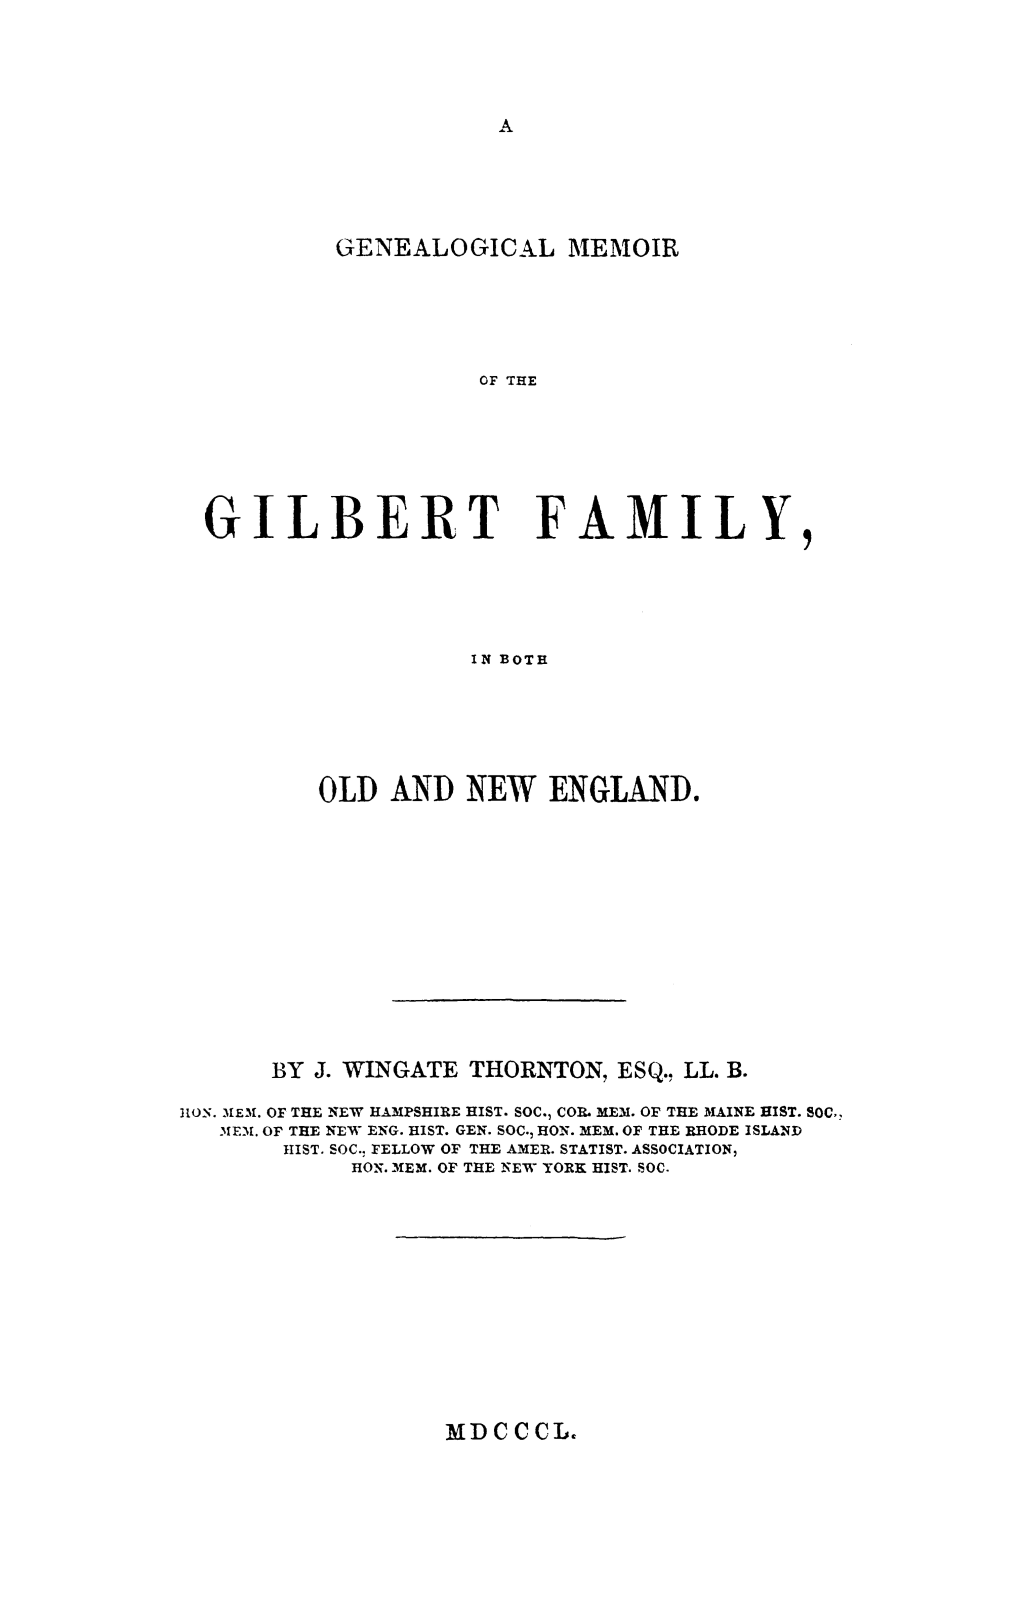 Gilbert Family